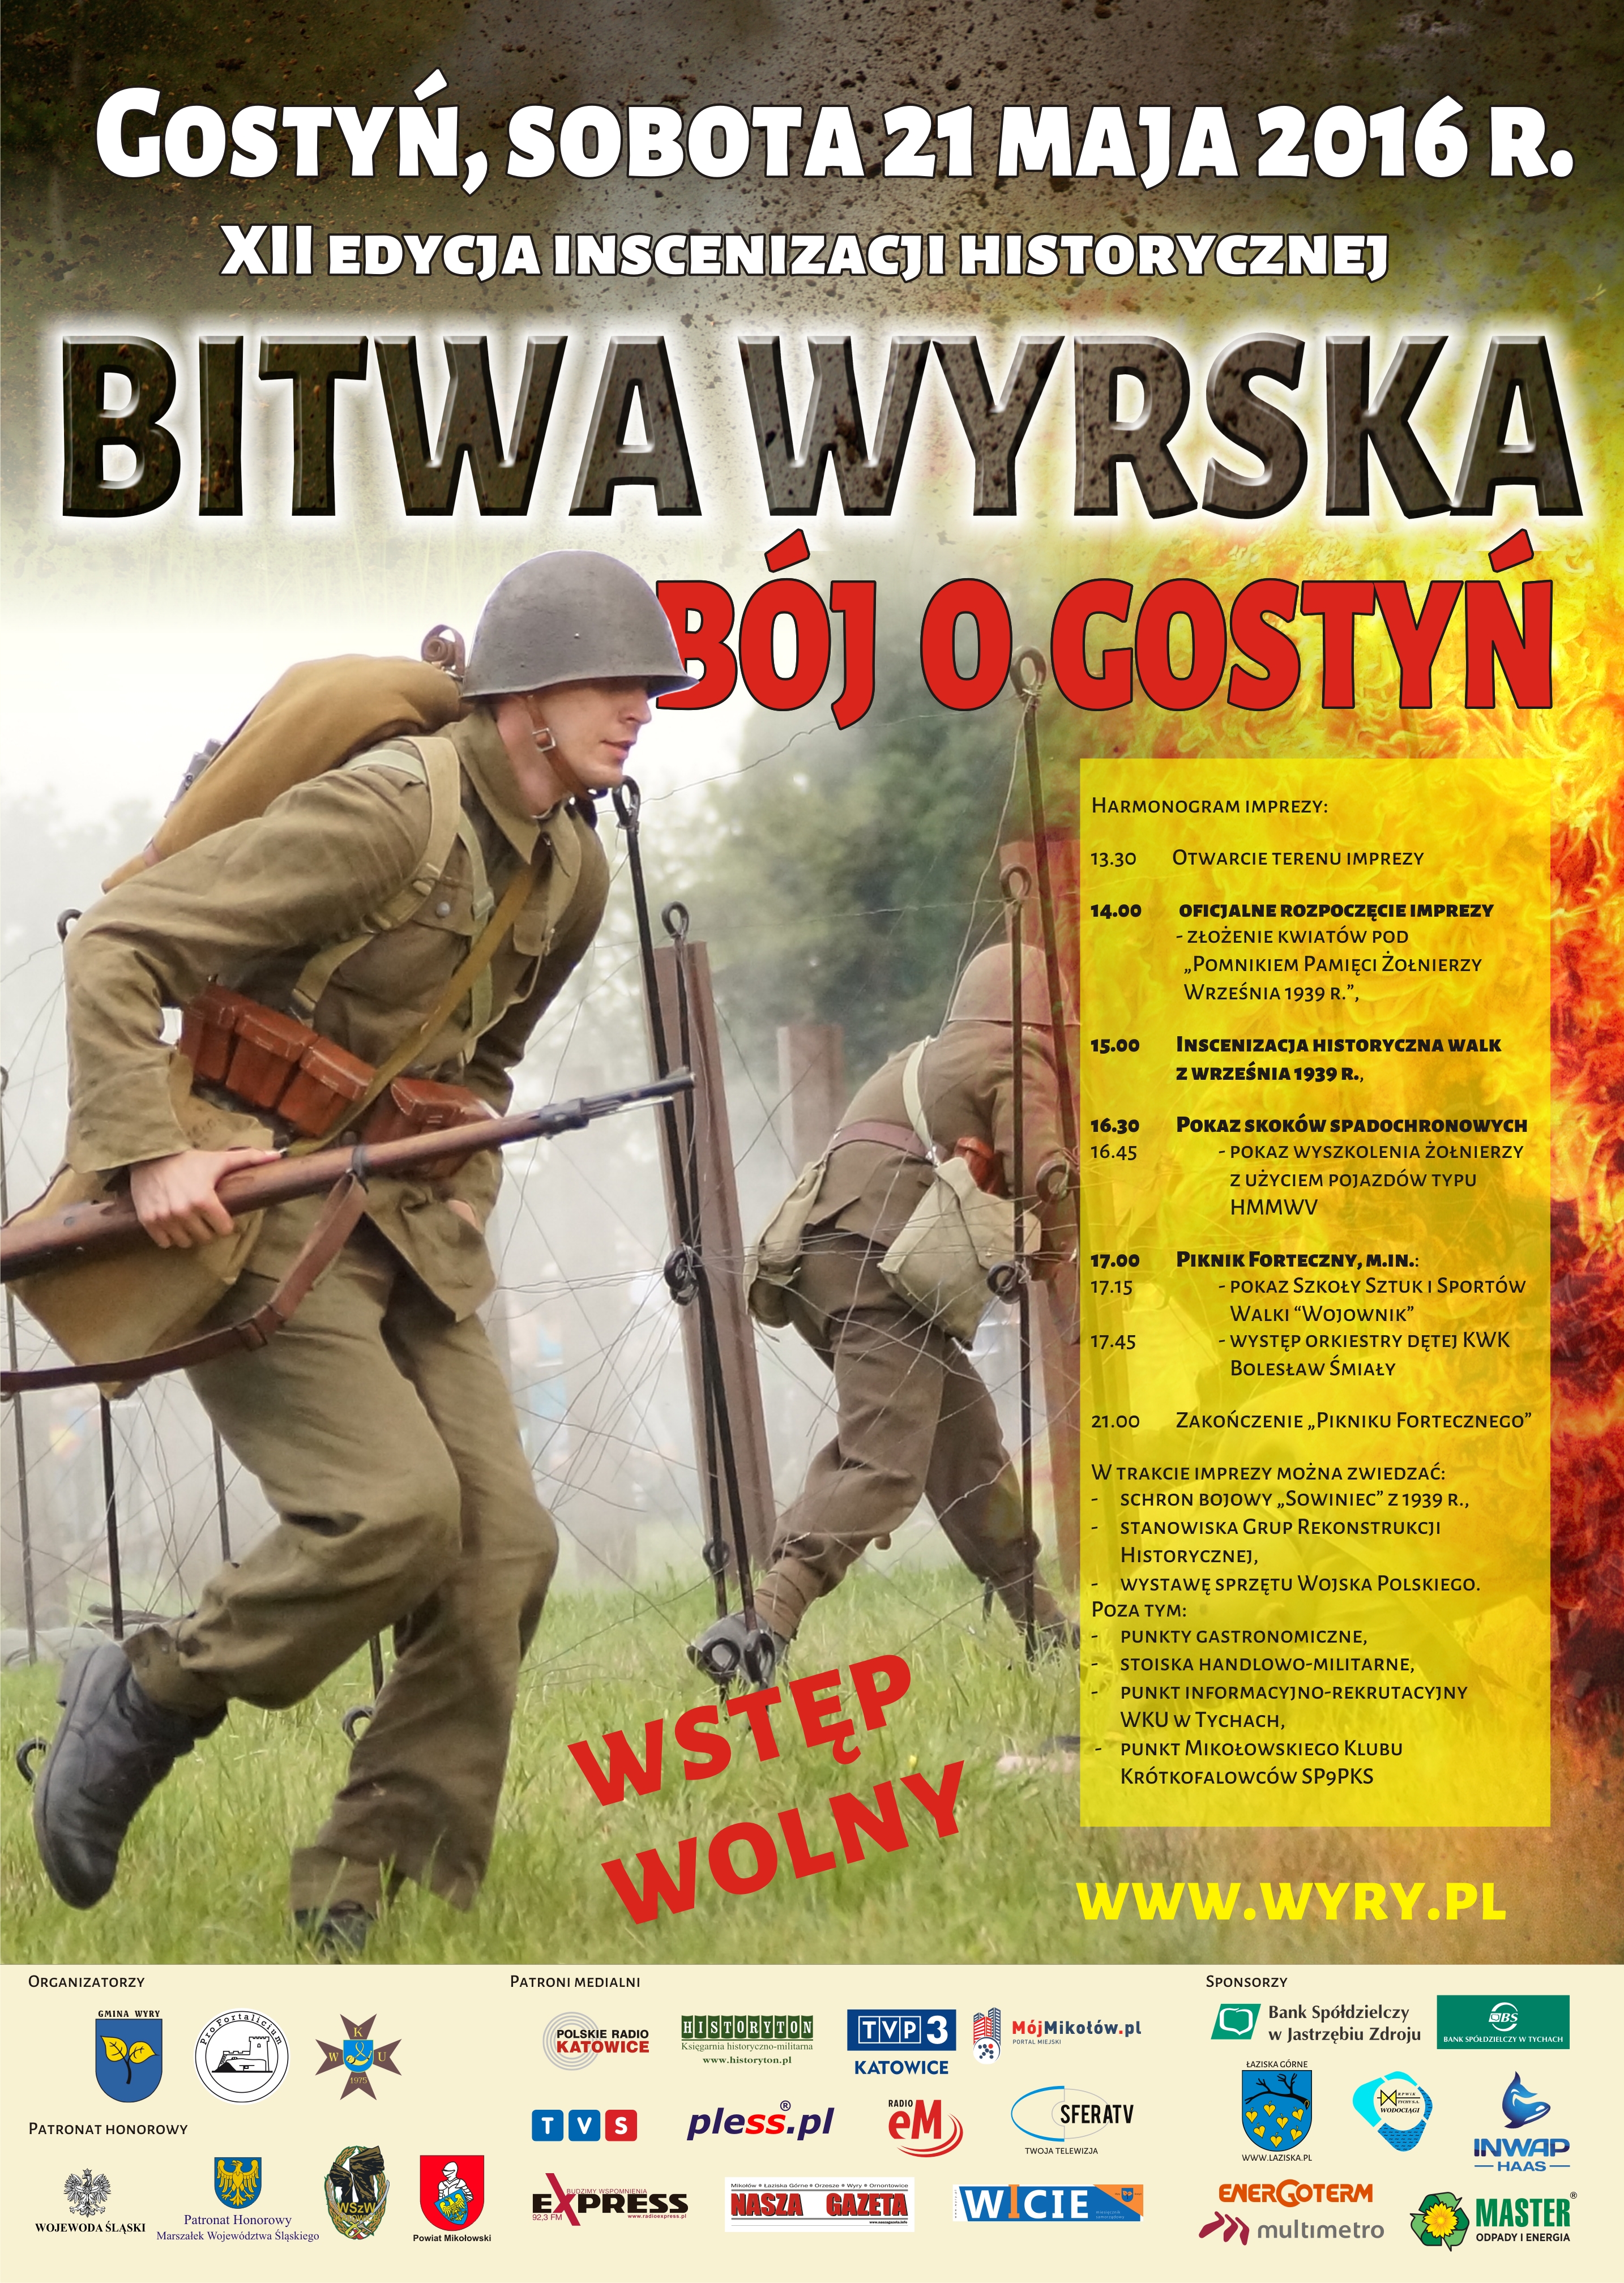 Bitwa Wyrska Bój o Gostyń plakat.jpg